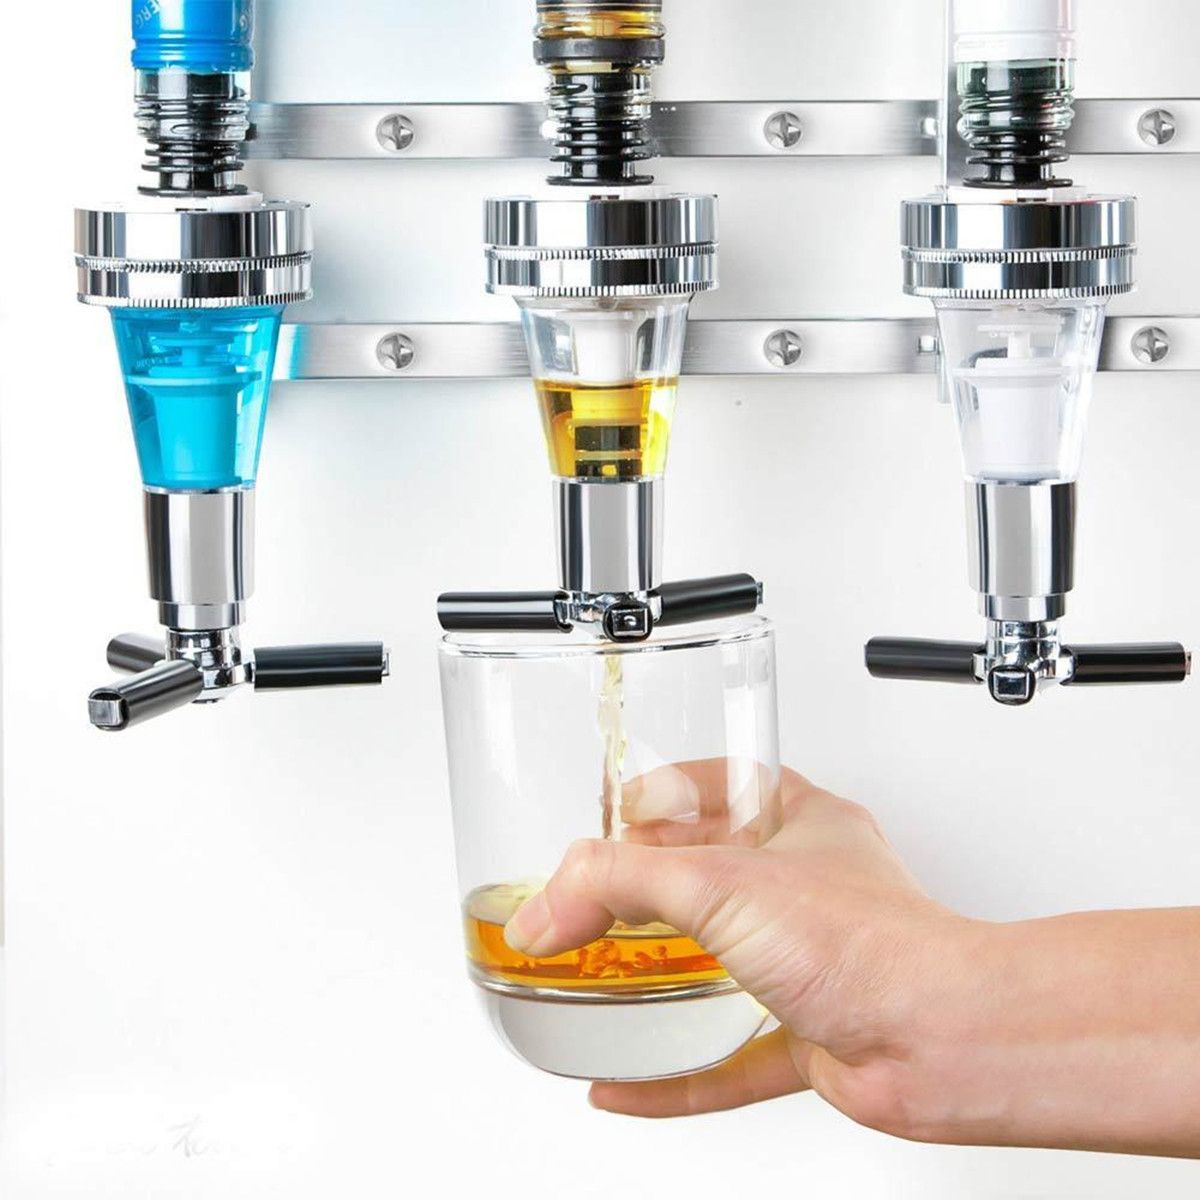 Beverage-Liquor-Dispenser-4-Bottle-Bar-Alcohol-Holder-Cocktail-Drink-Shot-Bracket-Wall-Mounted-1364361